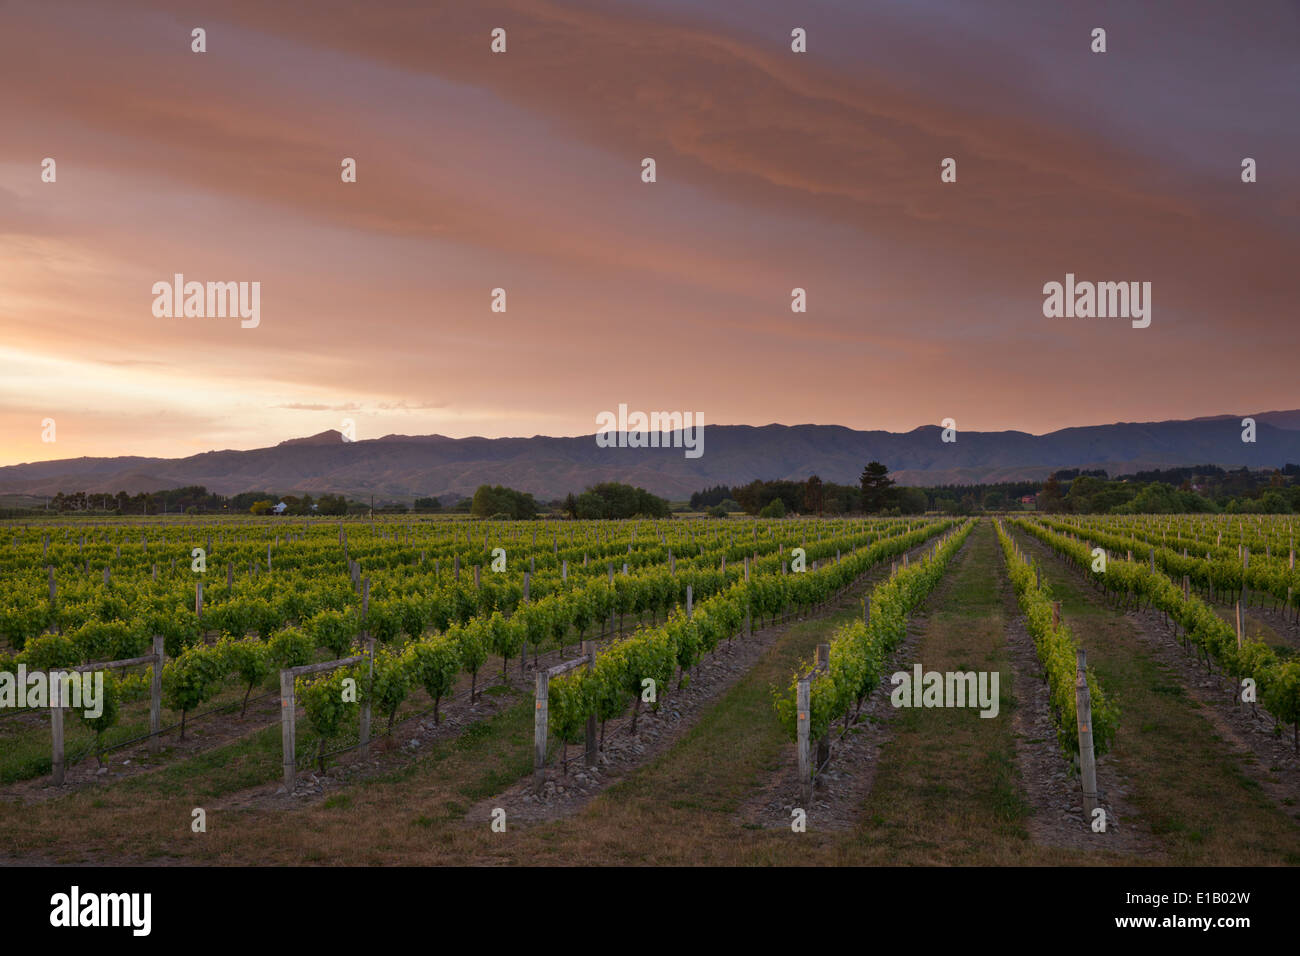 Vignoble de l'aube, Renwick, près de Blenheim, région de Marlborough, île du Sud, Nouvelle-Zélande, Pacifique Sud Banque D'Images